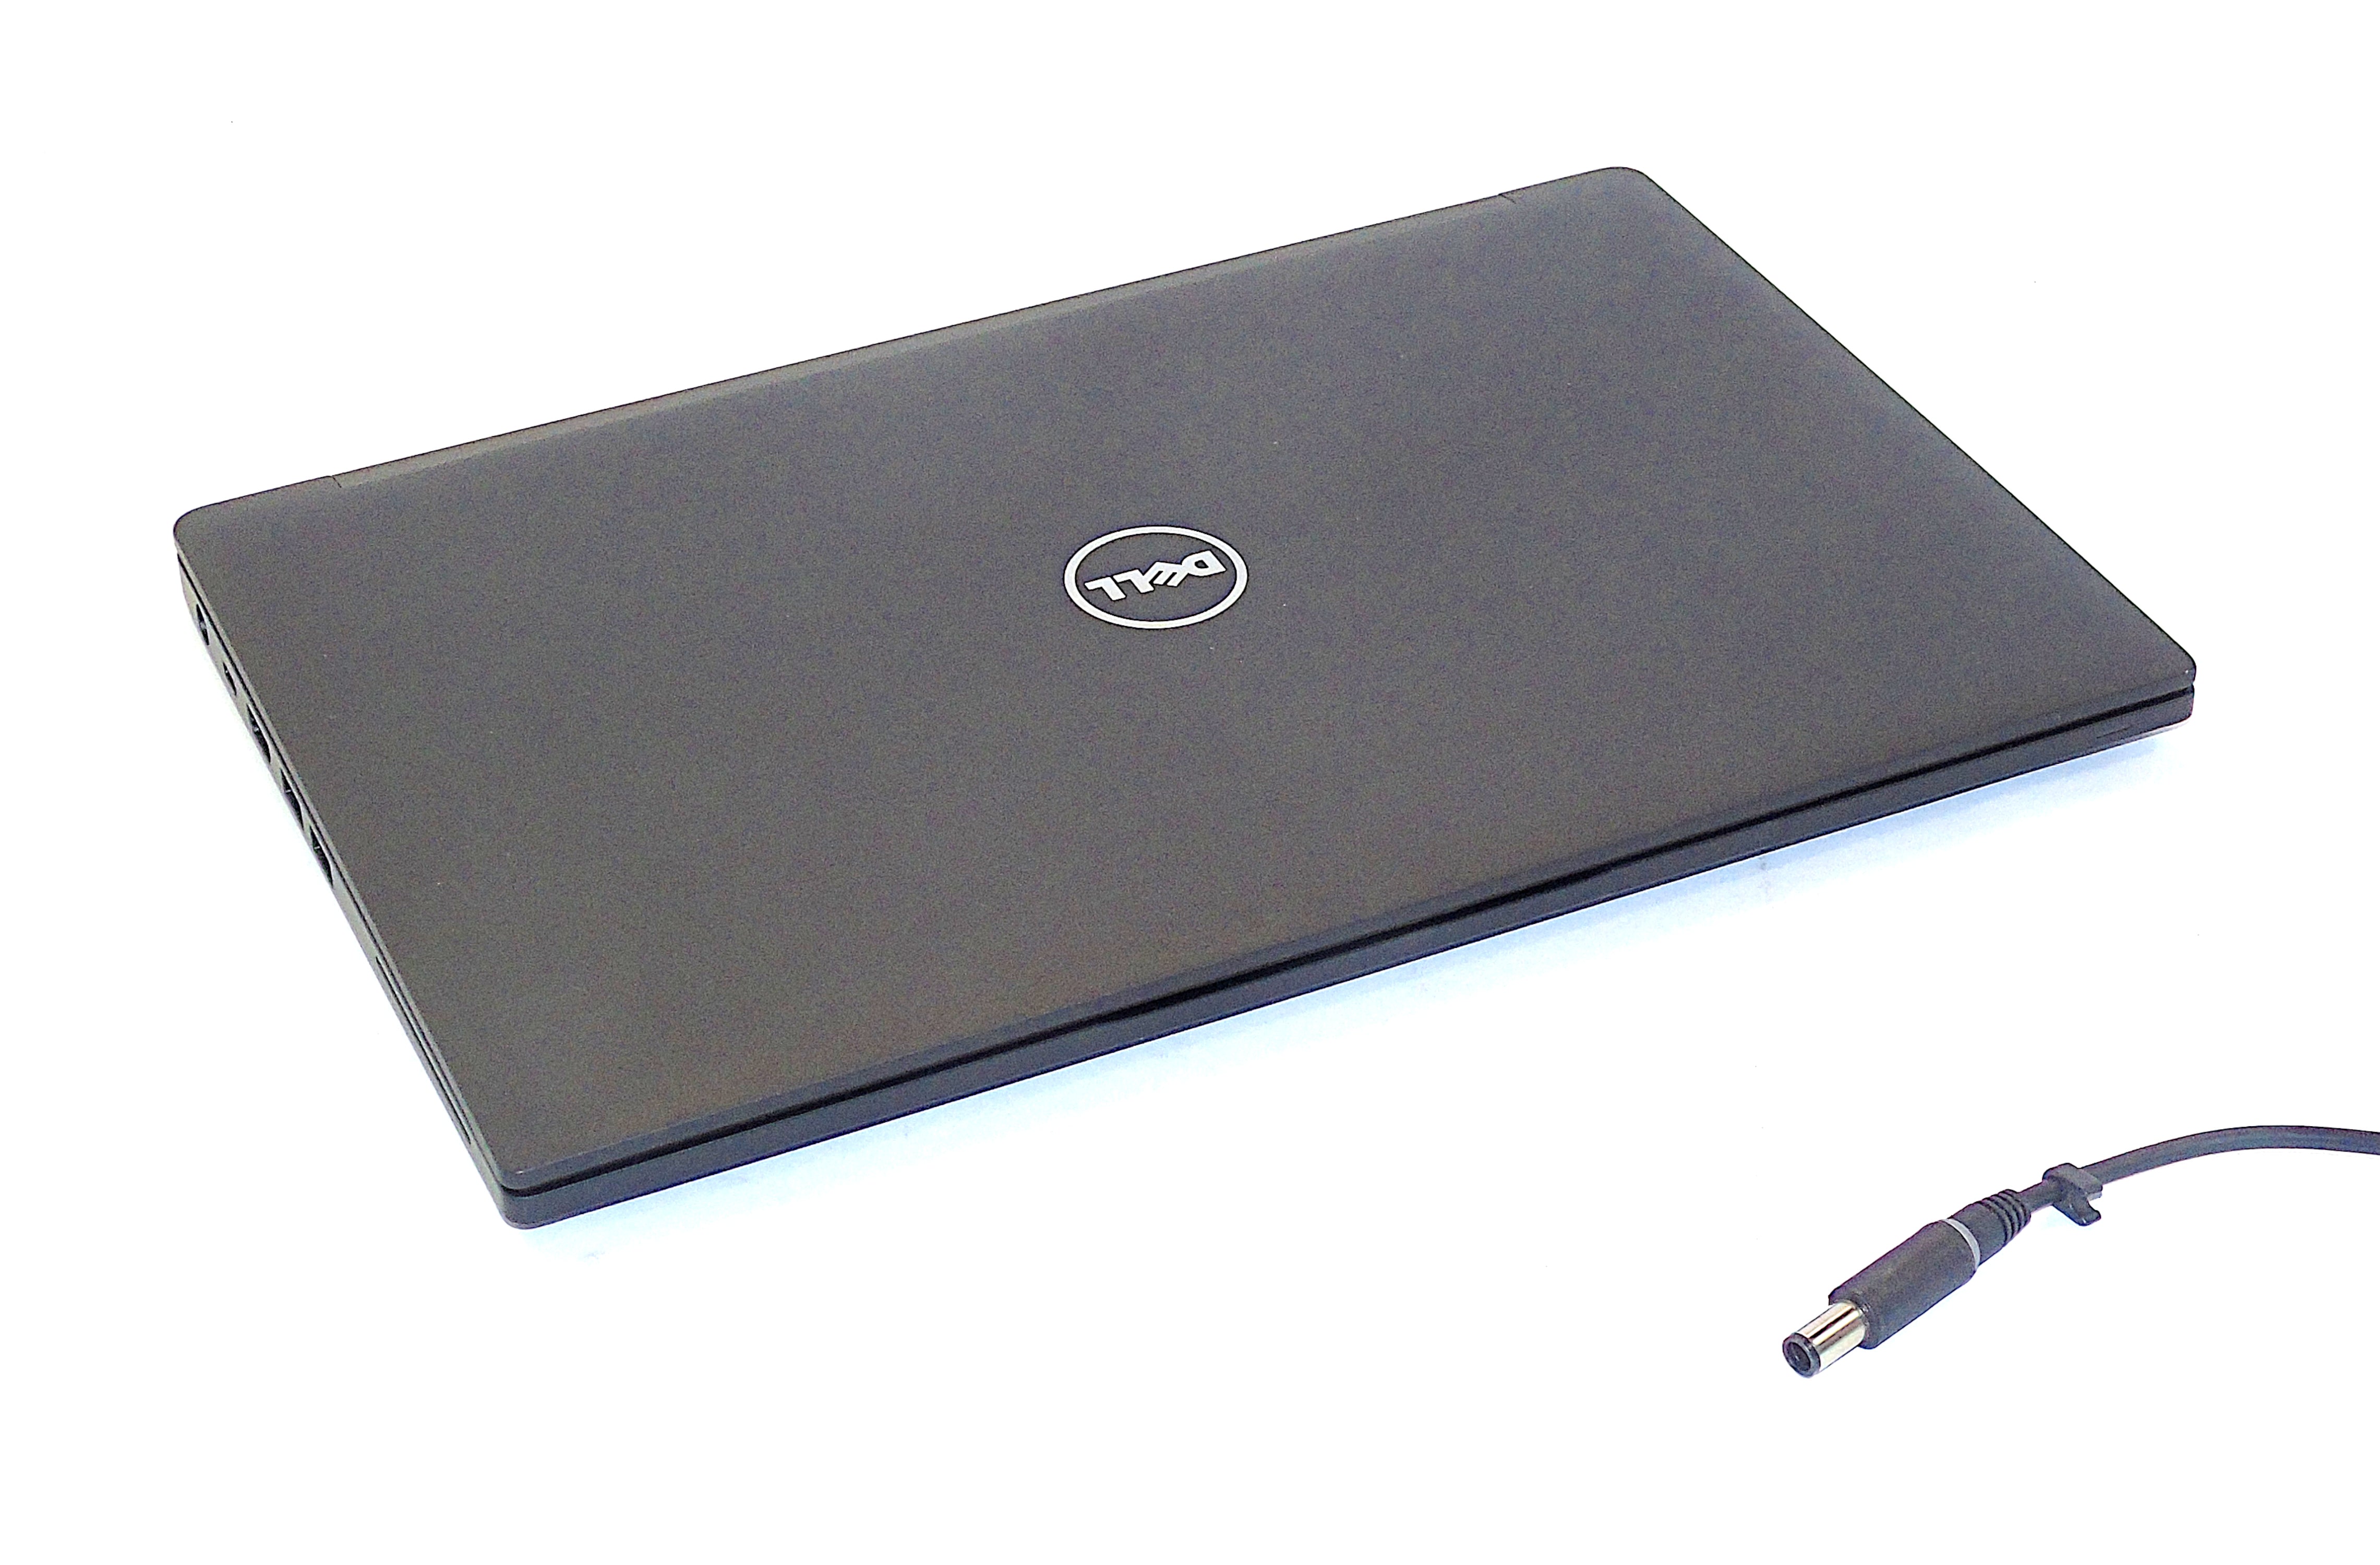 Dell Latitude 7480 Laptop, 13.9" Core i7 6th Gen, 8GB RAM, 256GB SSD